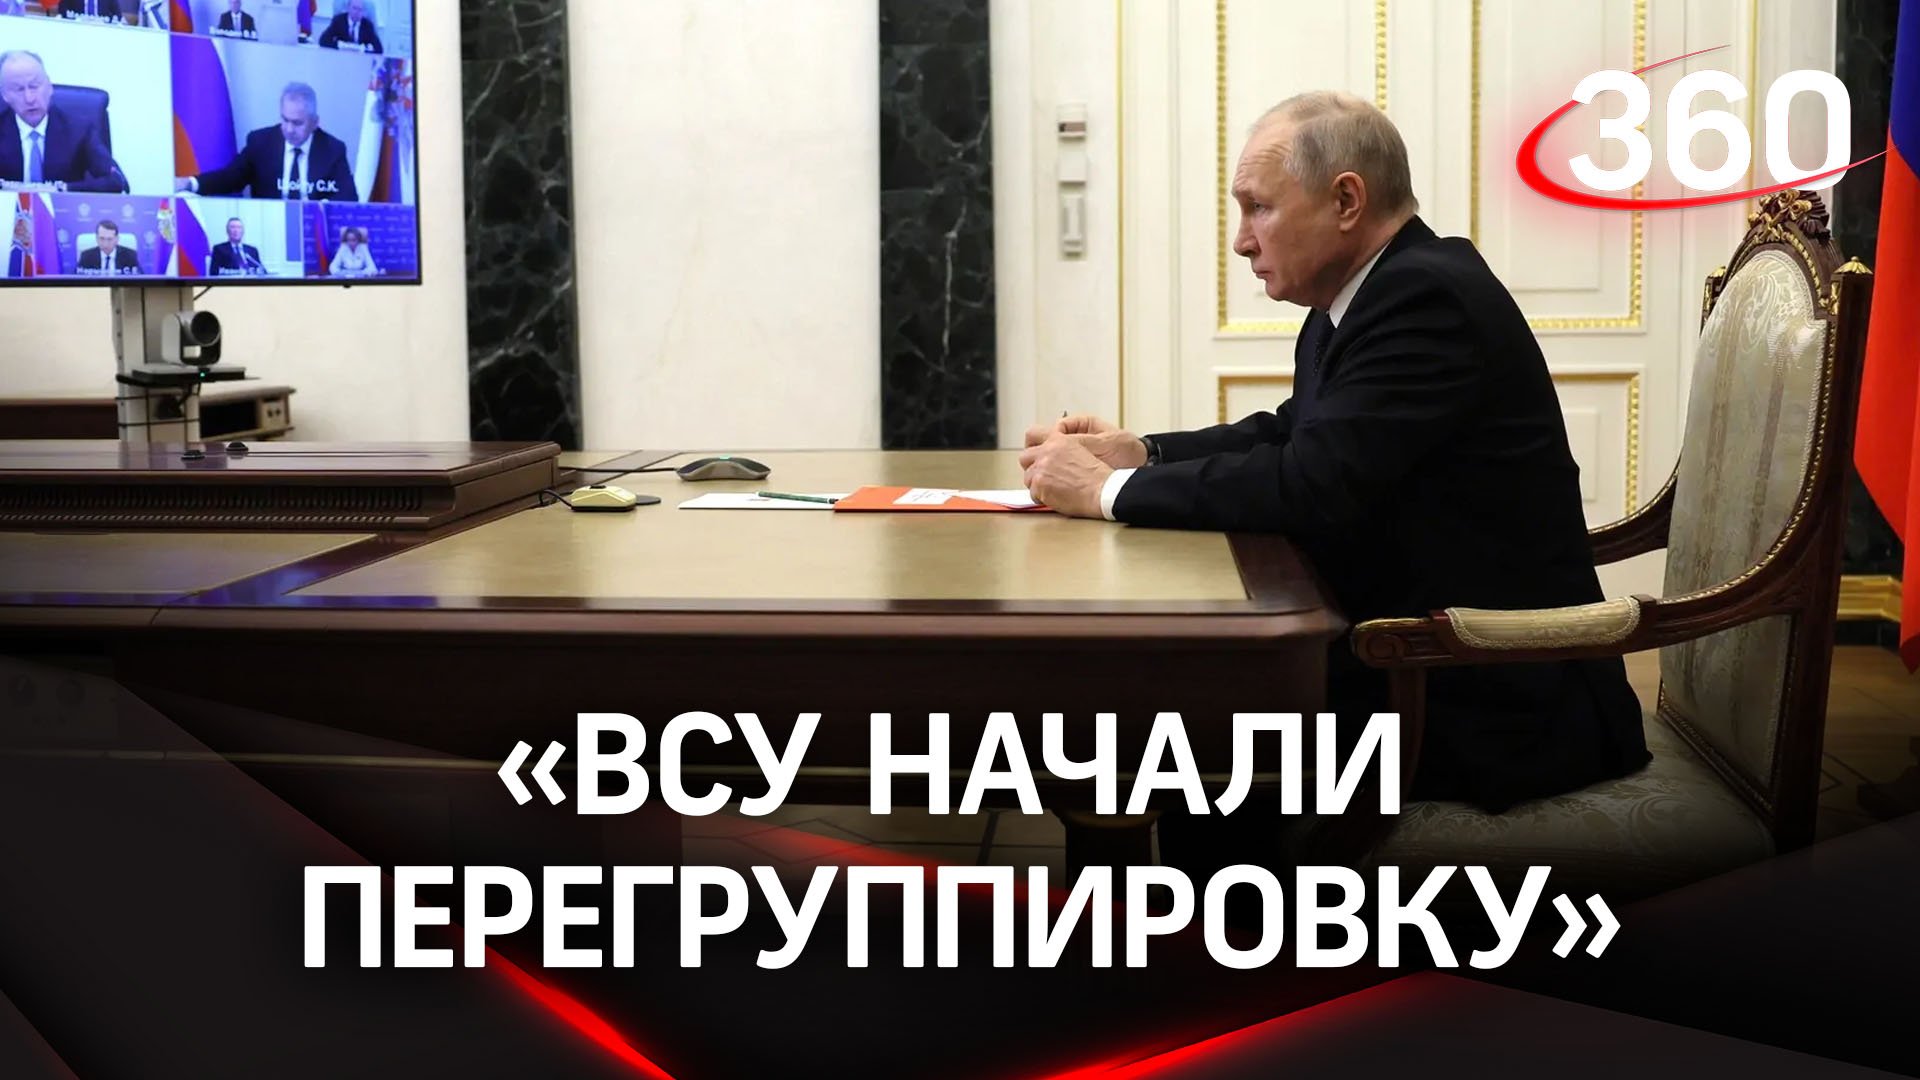 ВСУ начали перегруппировку - Шойгу доложил Путину о замедлении контрнаступления